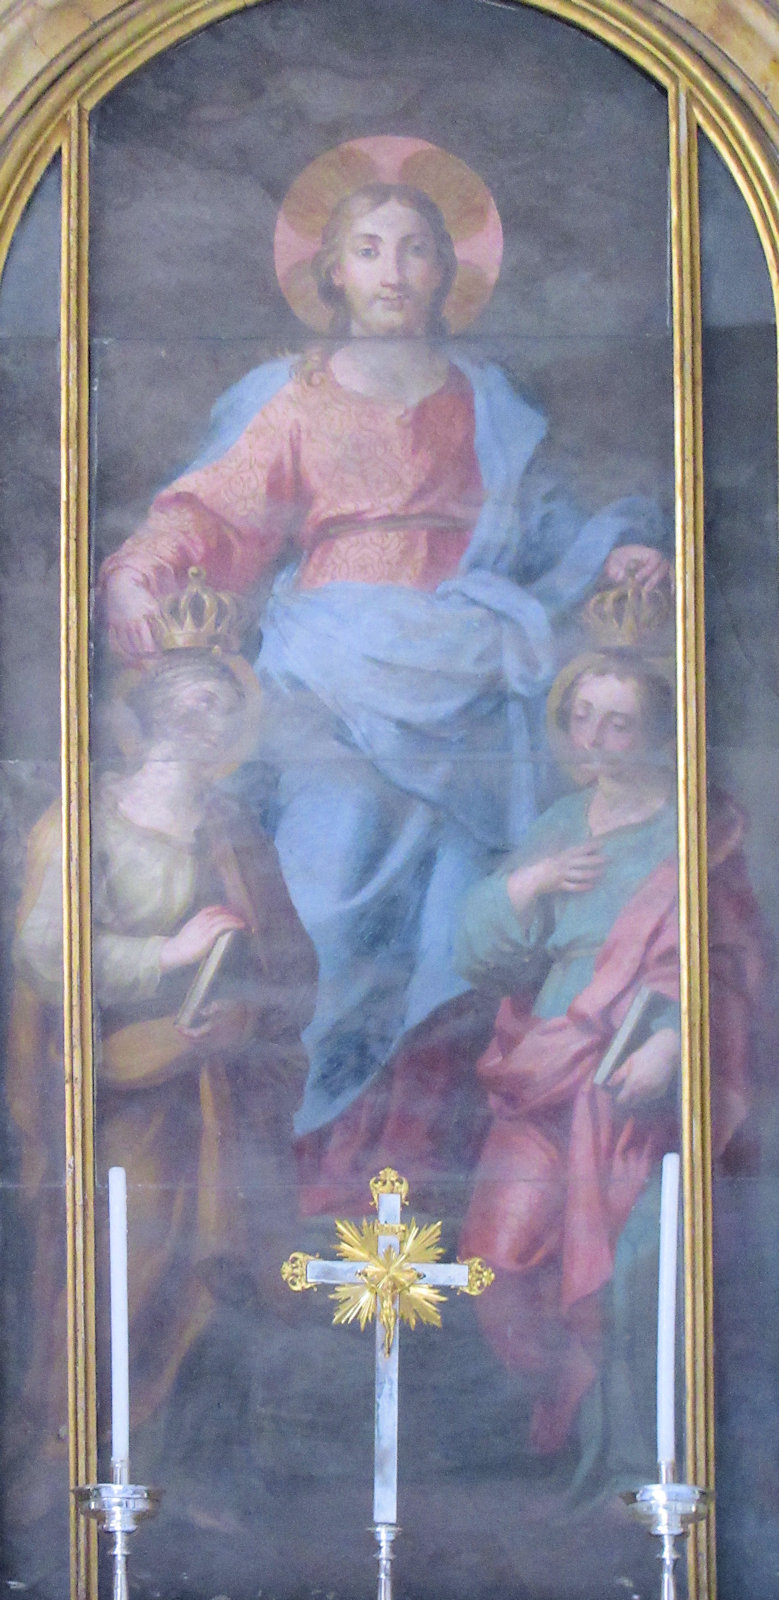 Altarbild in der Rufina und Secunda geweihten Kapelle der Taufkapelle San Giovanni in Fonte am Lateran in Rom